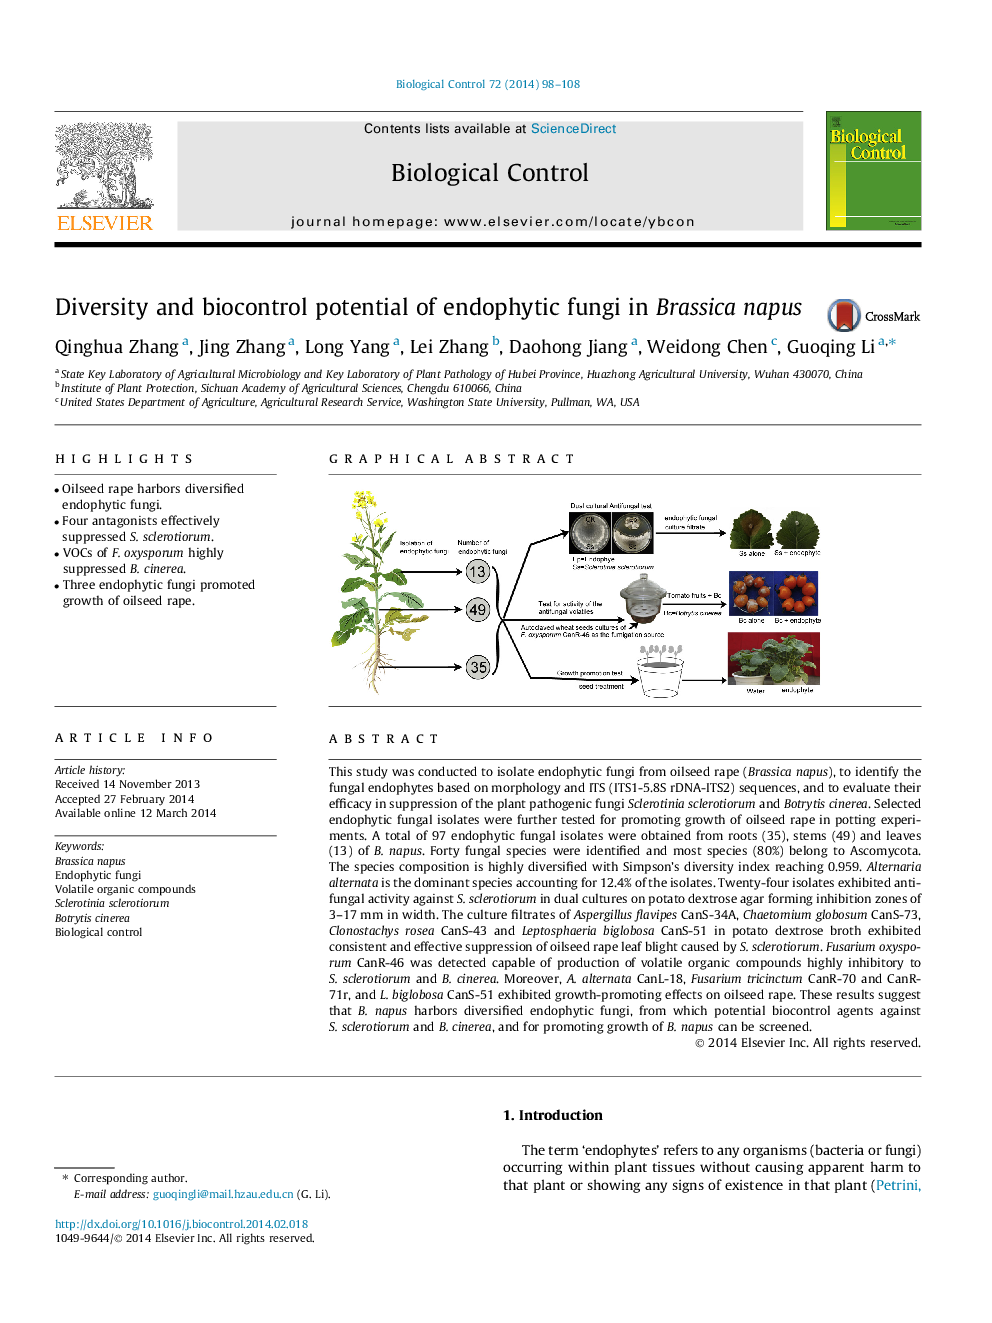 Diversity and biocontrol potential of endophytic fungi in Brassica napus